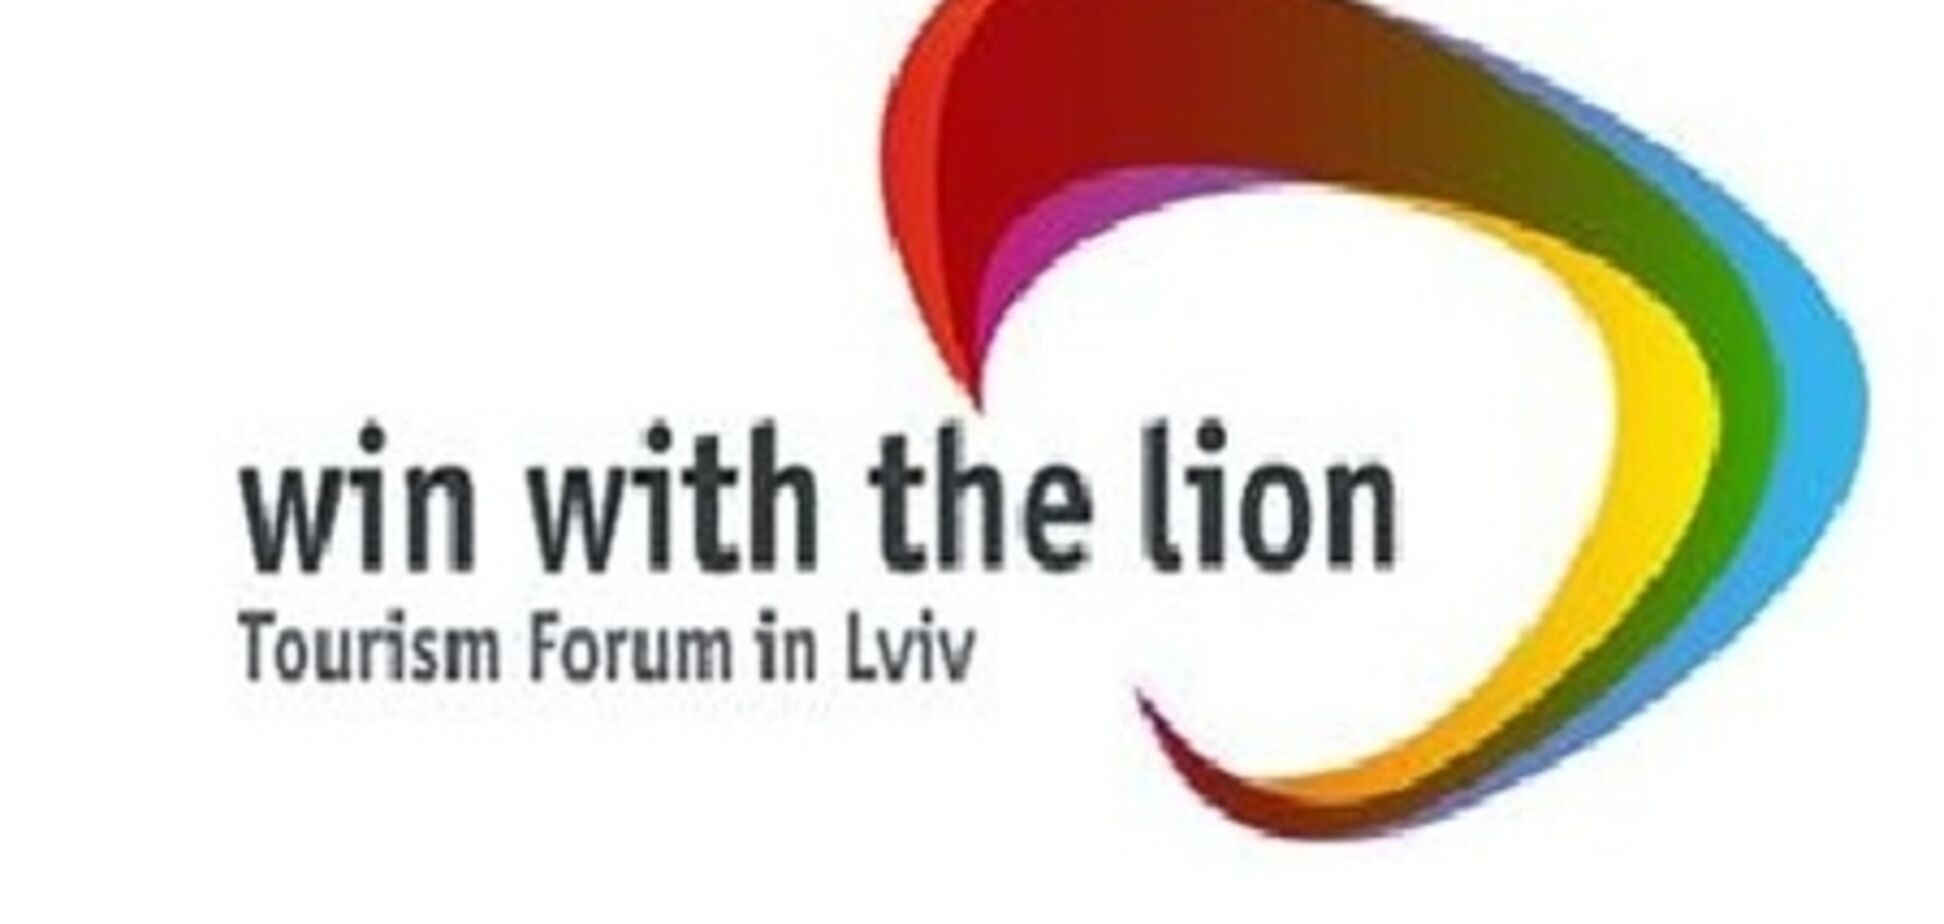 Во Львове пройдет туристический форум 'Перемагай з Левом'